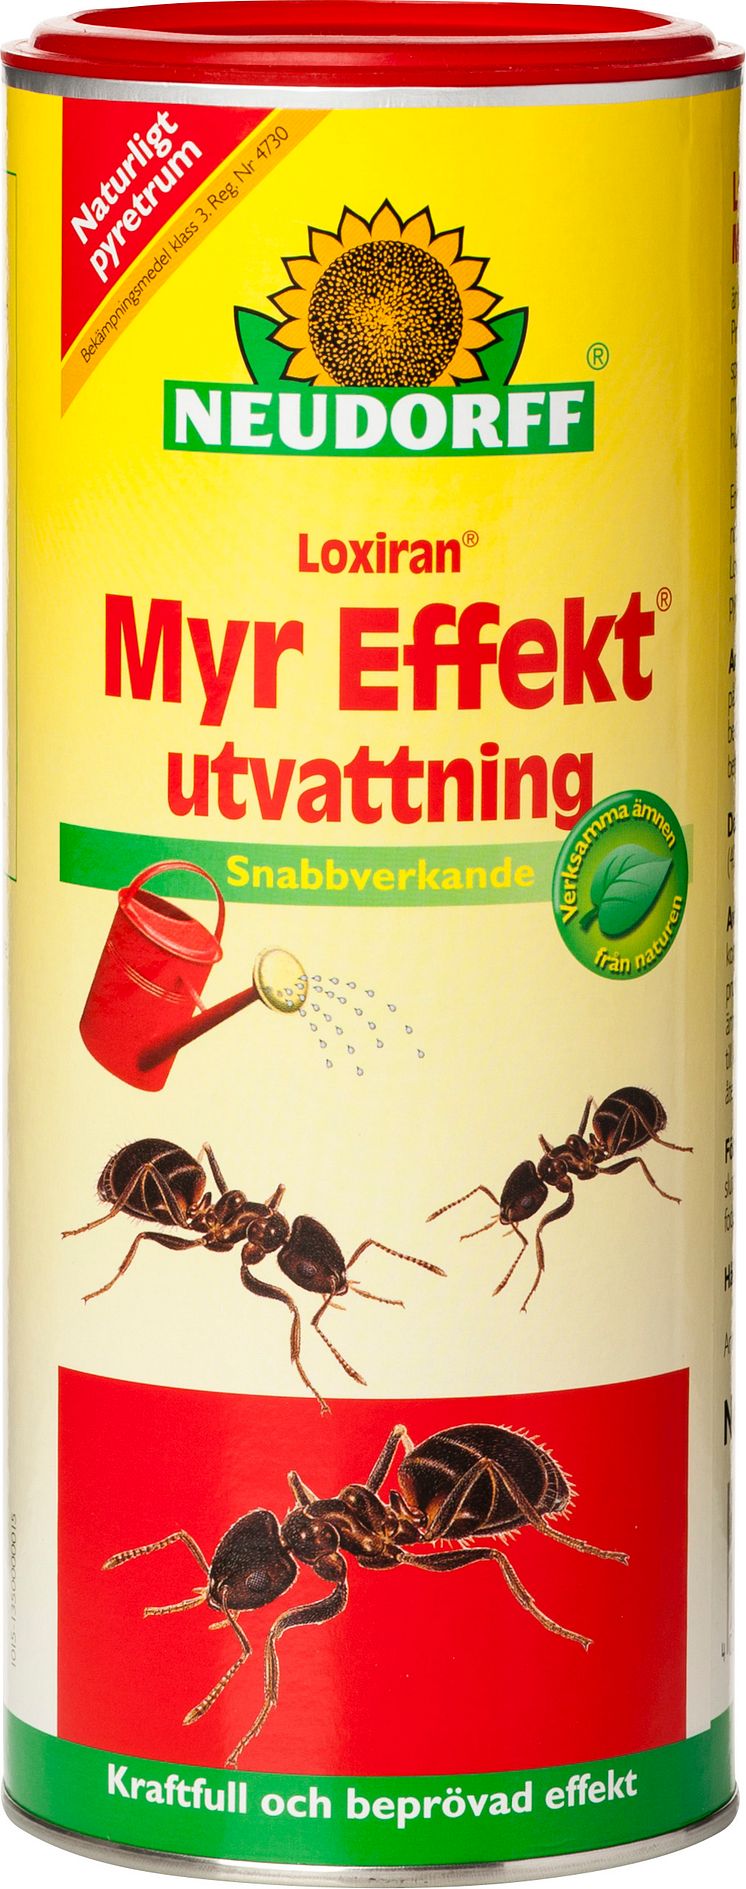 Myr Effekt Utvattning - Neudorff